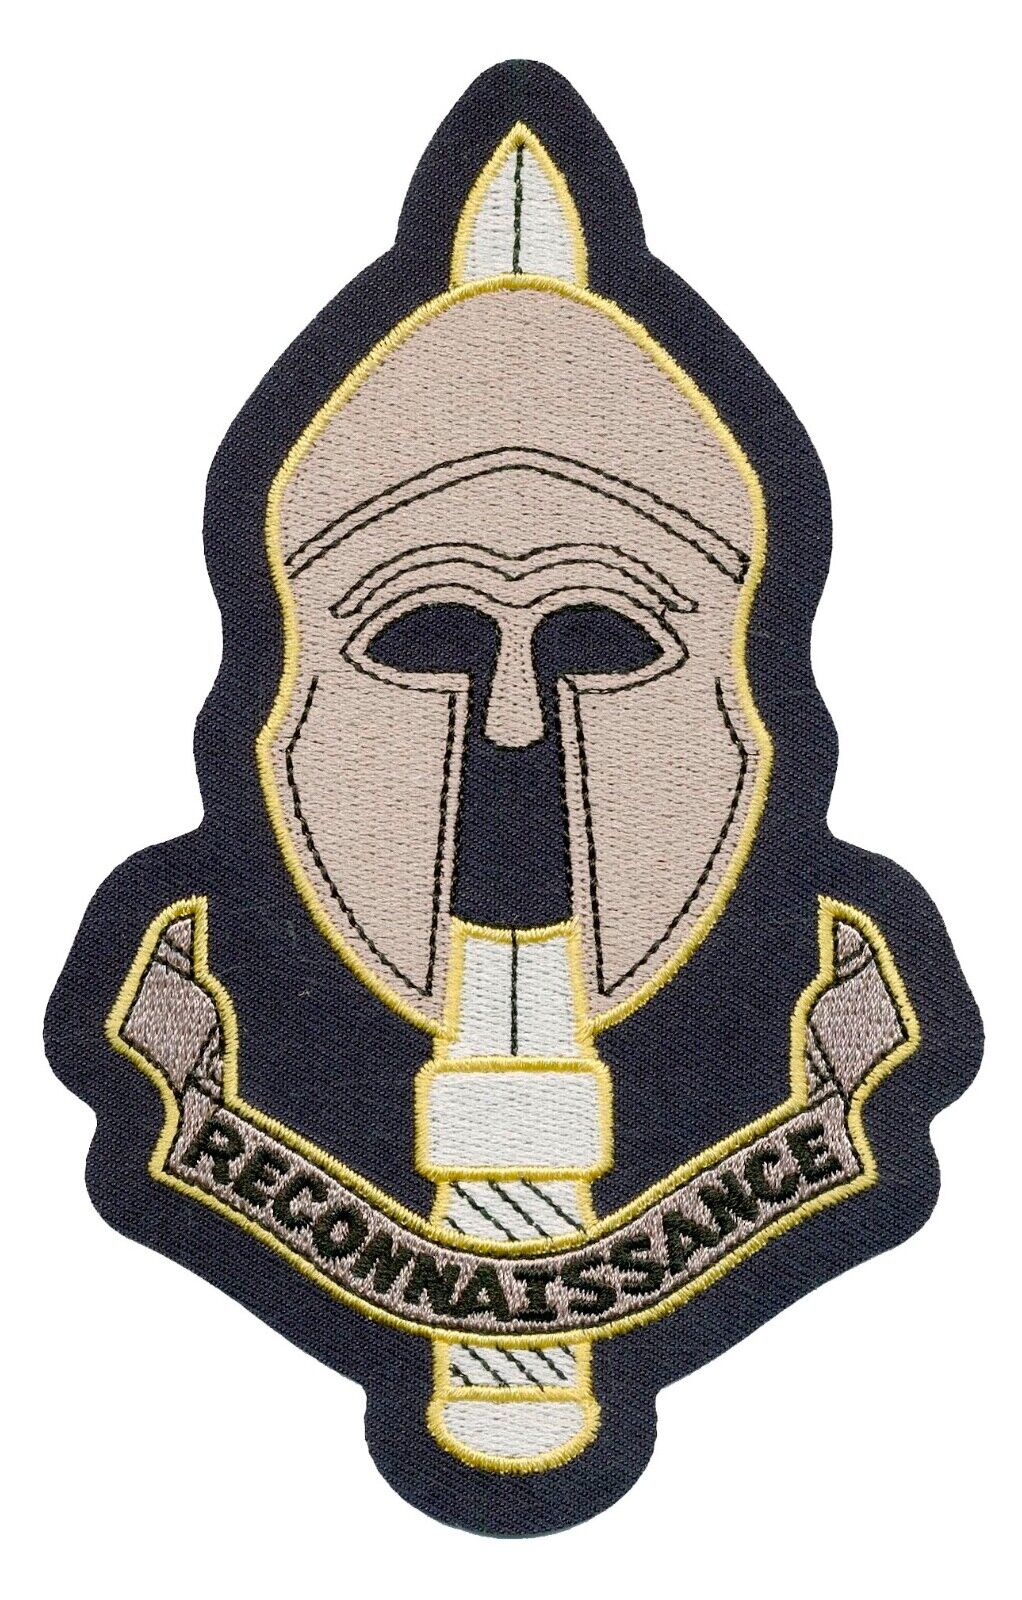 British Special Reconnaissance Regiment SRR Patch